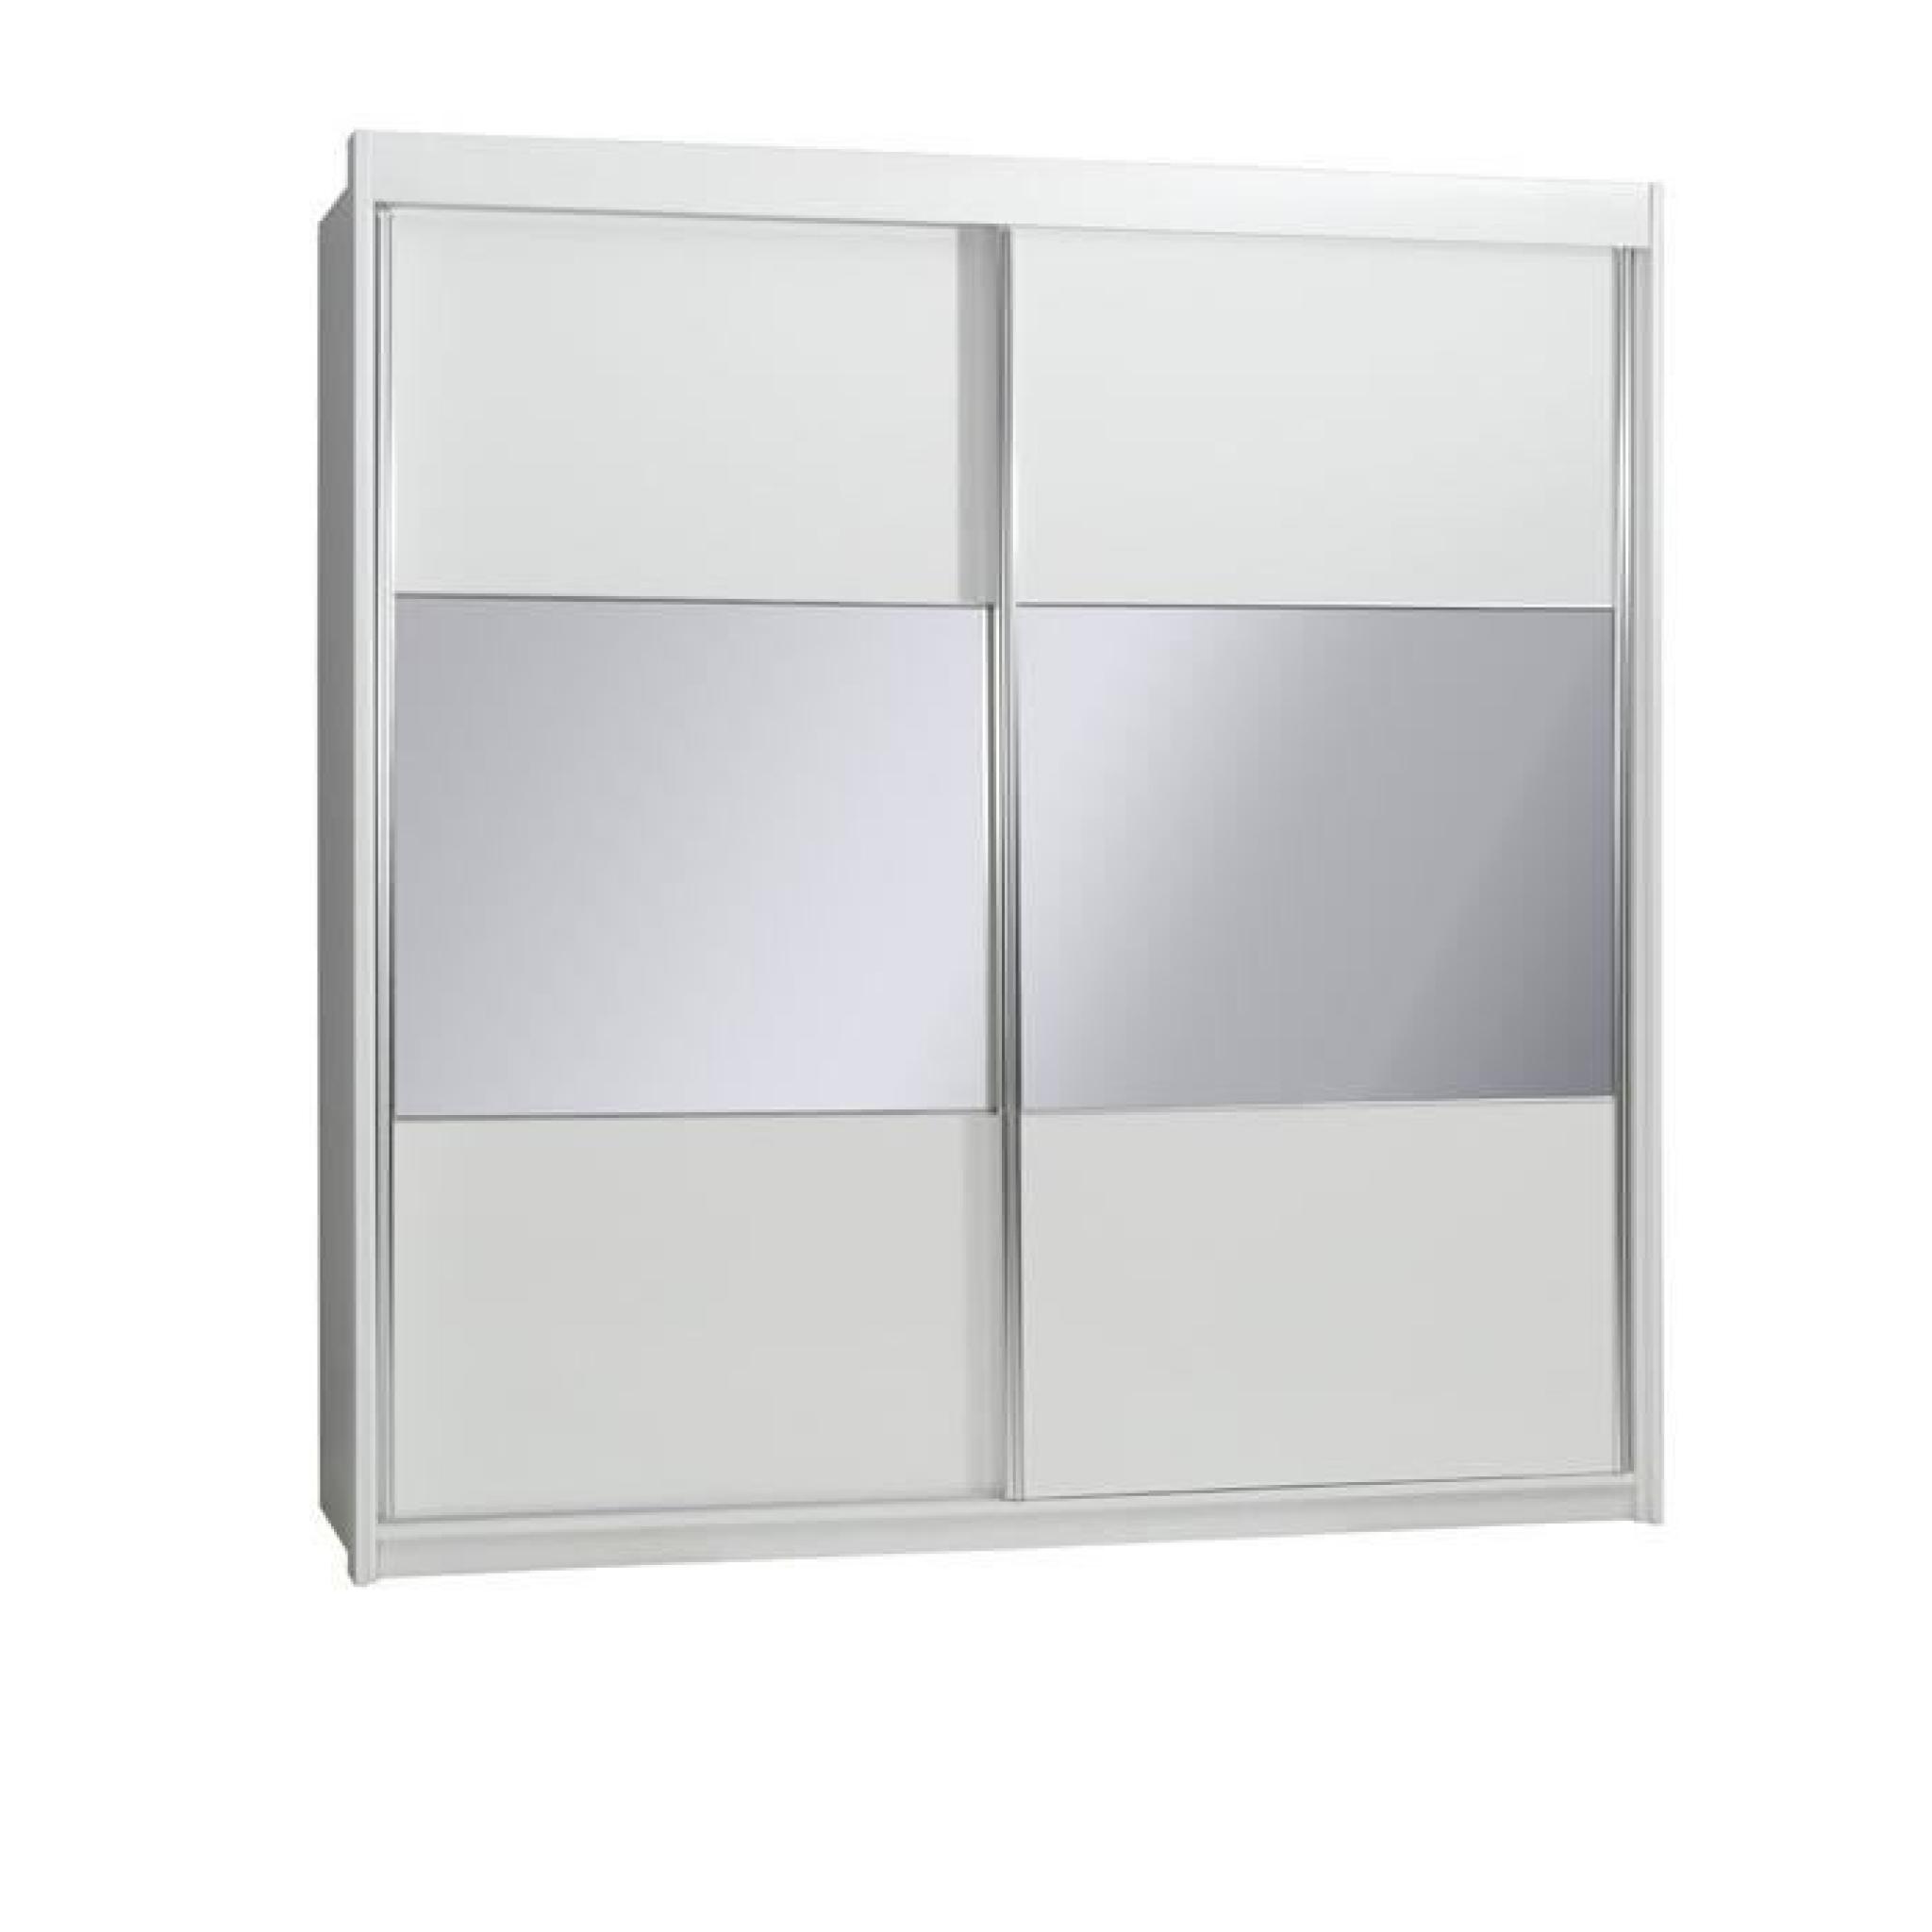 Armoire 2 portes coulissantes VERSUS blanche laquée avec miroirs. Meuble entièrement équipé. Idéal pour votre chambre à coucher pas cher